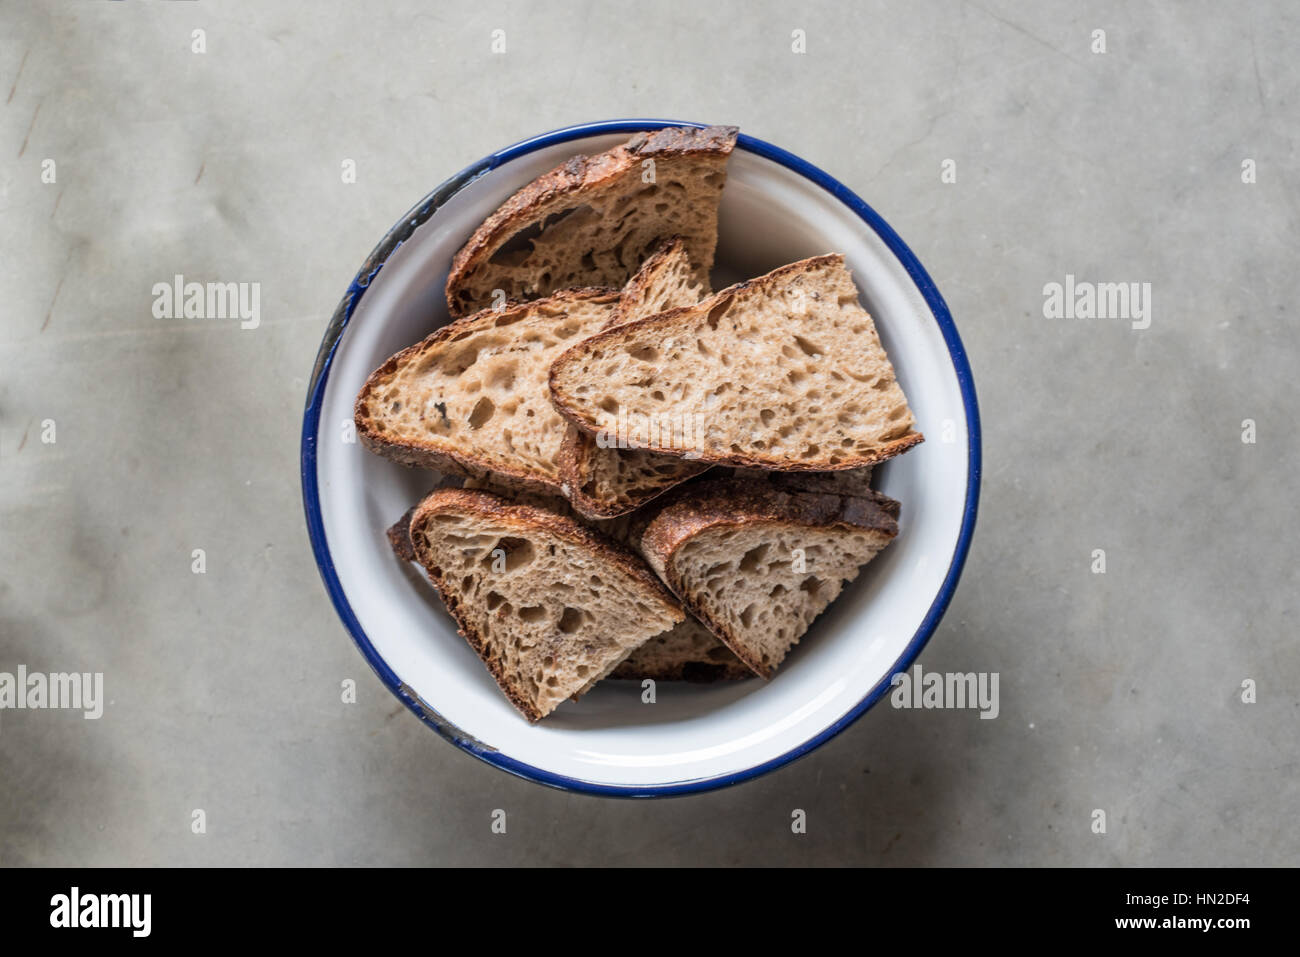 Tranches de pain au levain fraîchement cuits dans un bol blanc et bleu sur un fond conrete Banque D'Images